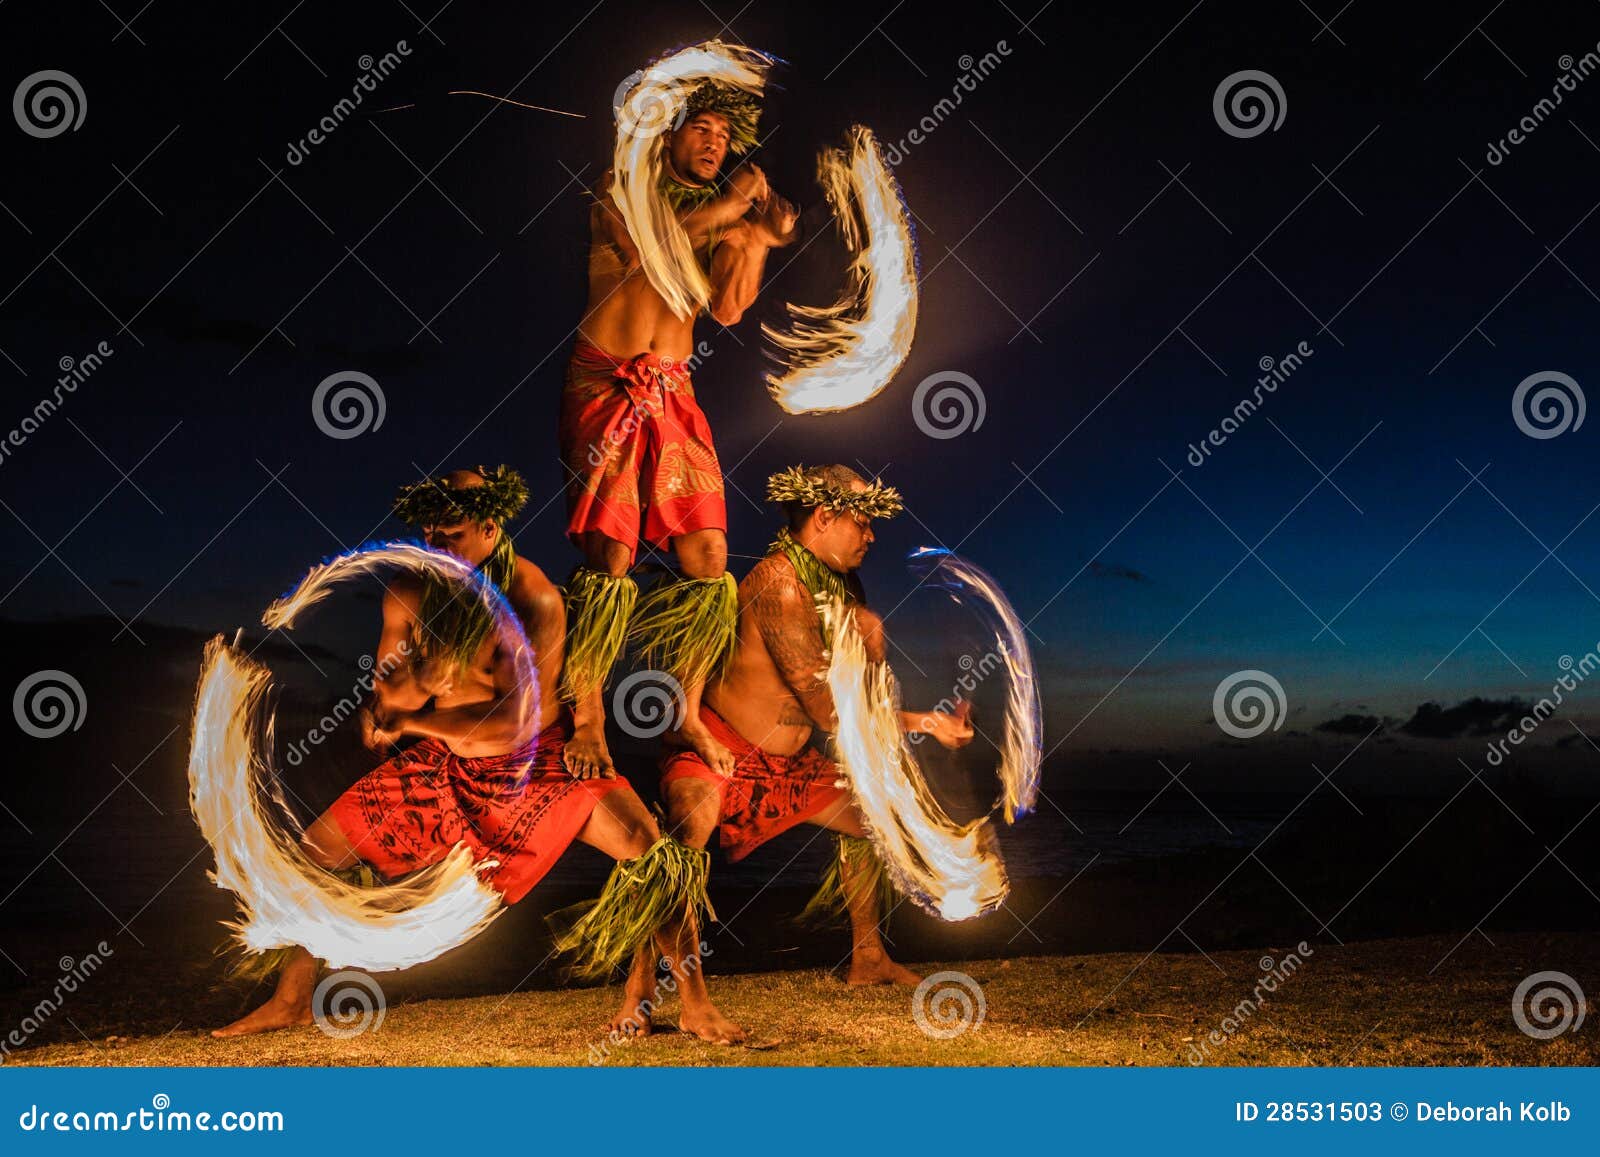 hawaiian fire dancers in the ocean